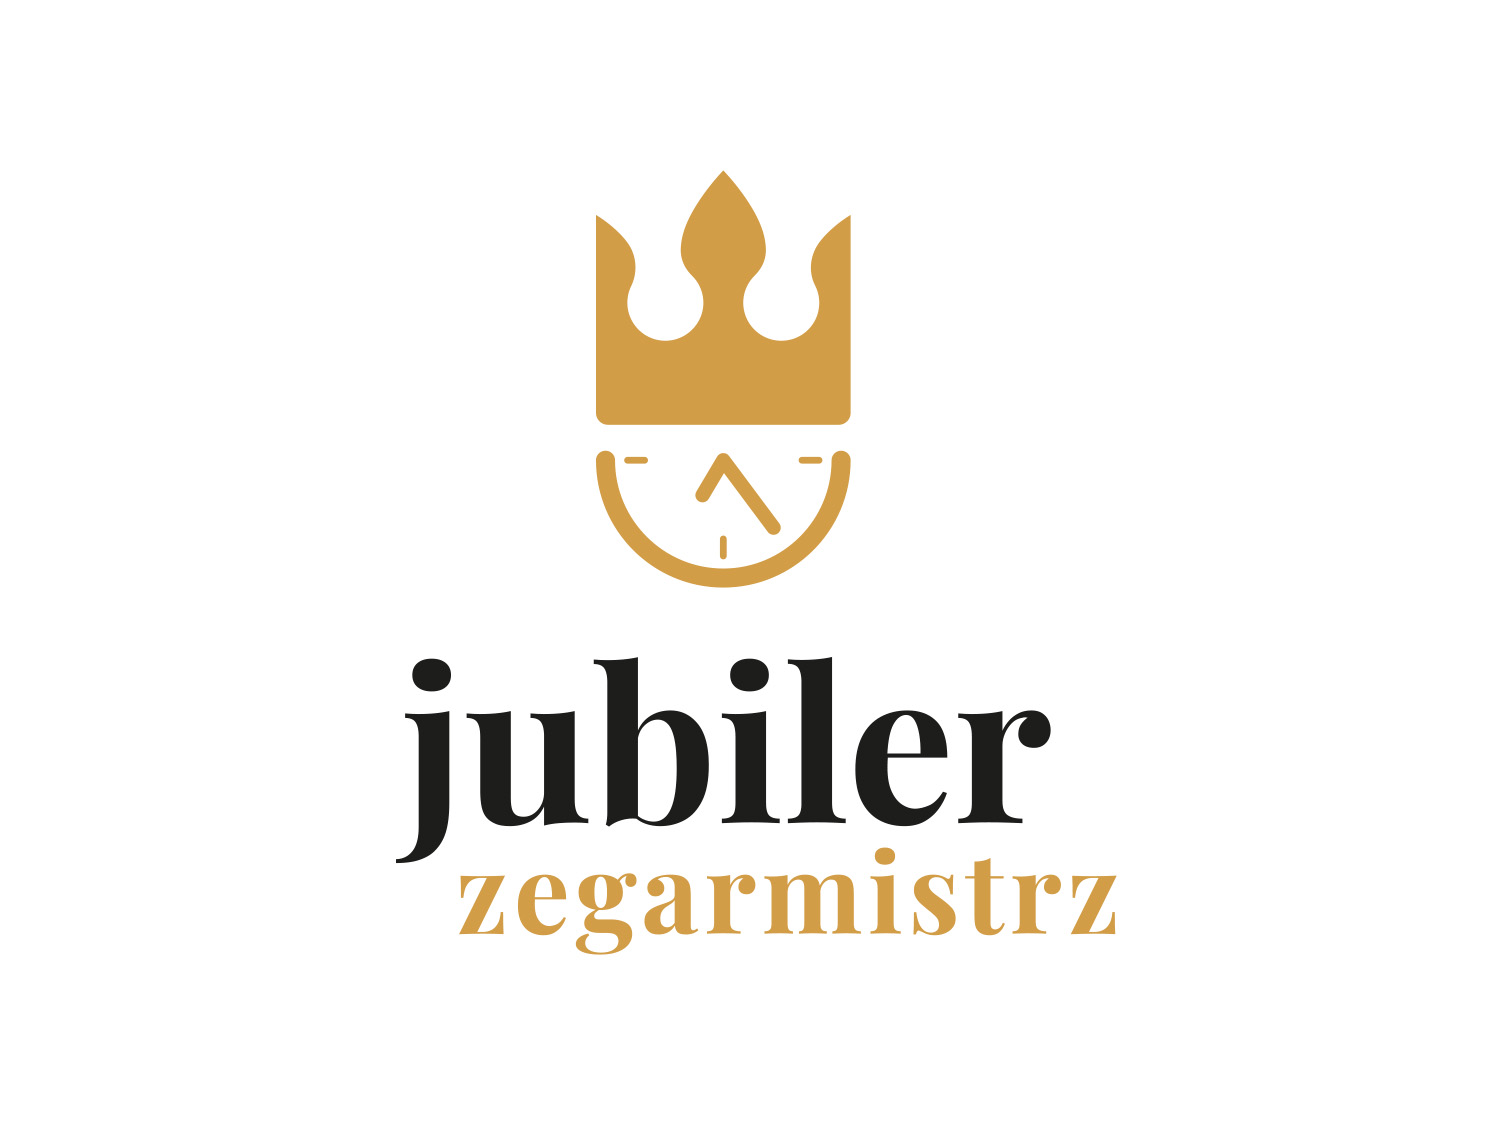 jubiler zegarmistrz logo